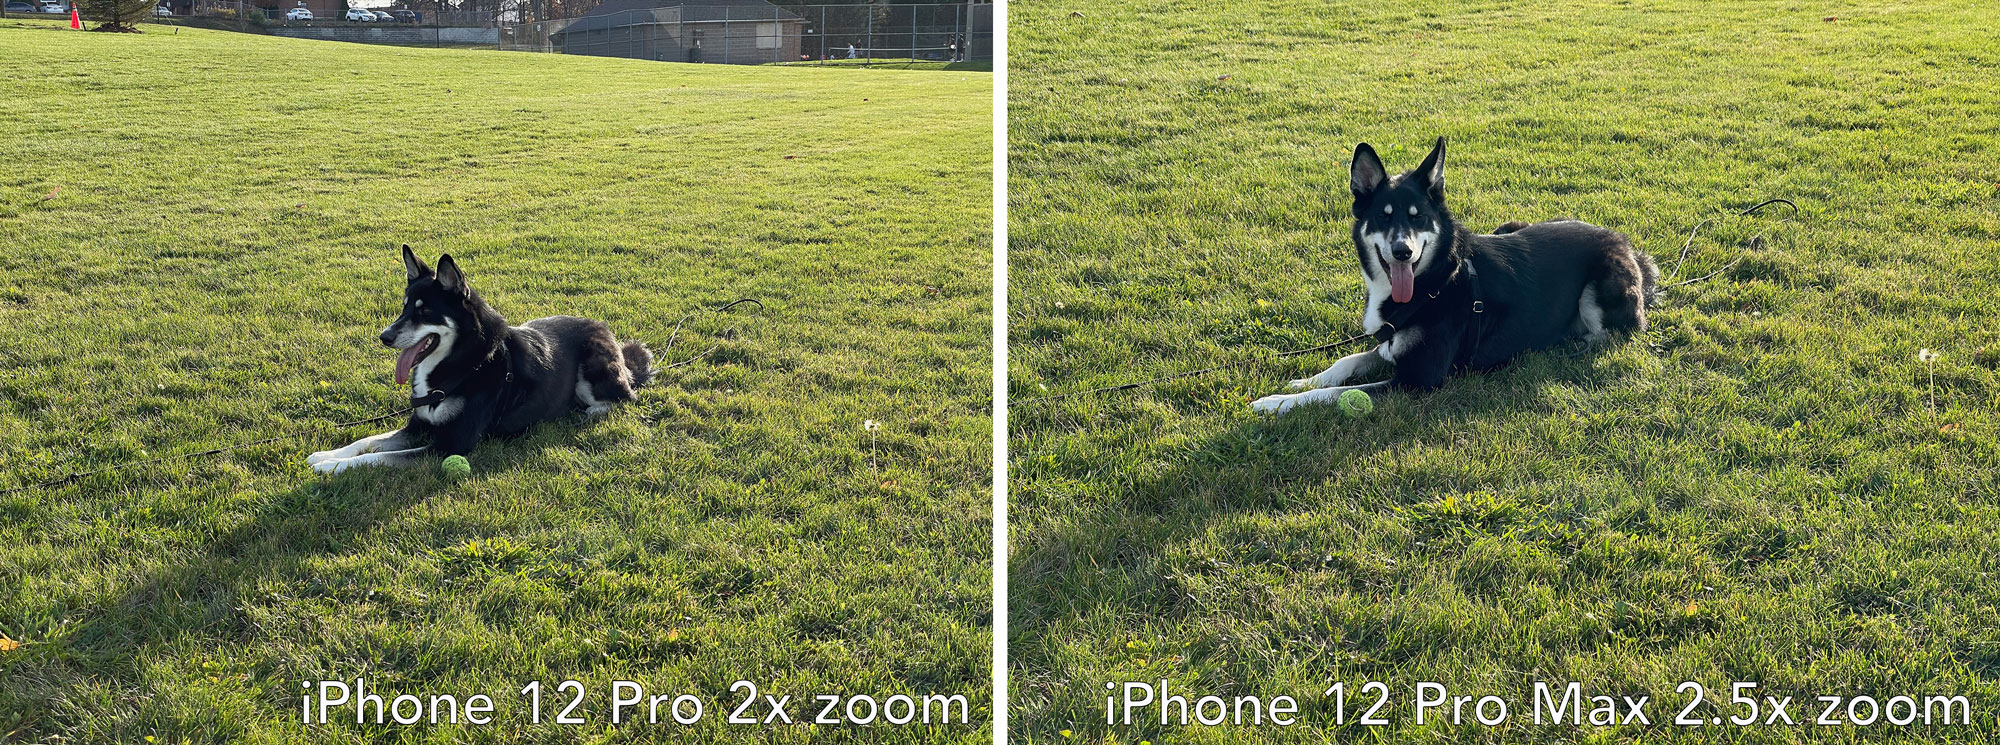 iPhone 12 Pro 2x zoom vs iPhone 12 Pro Max 2.5xzoom